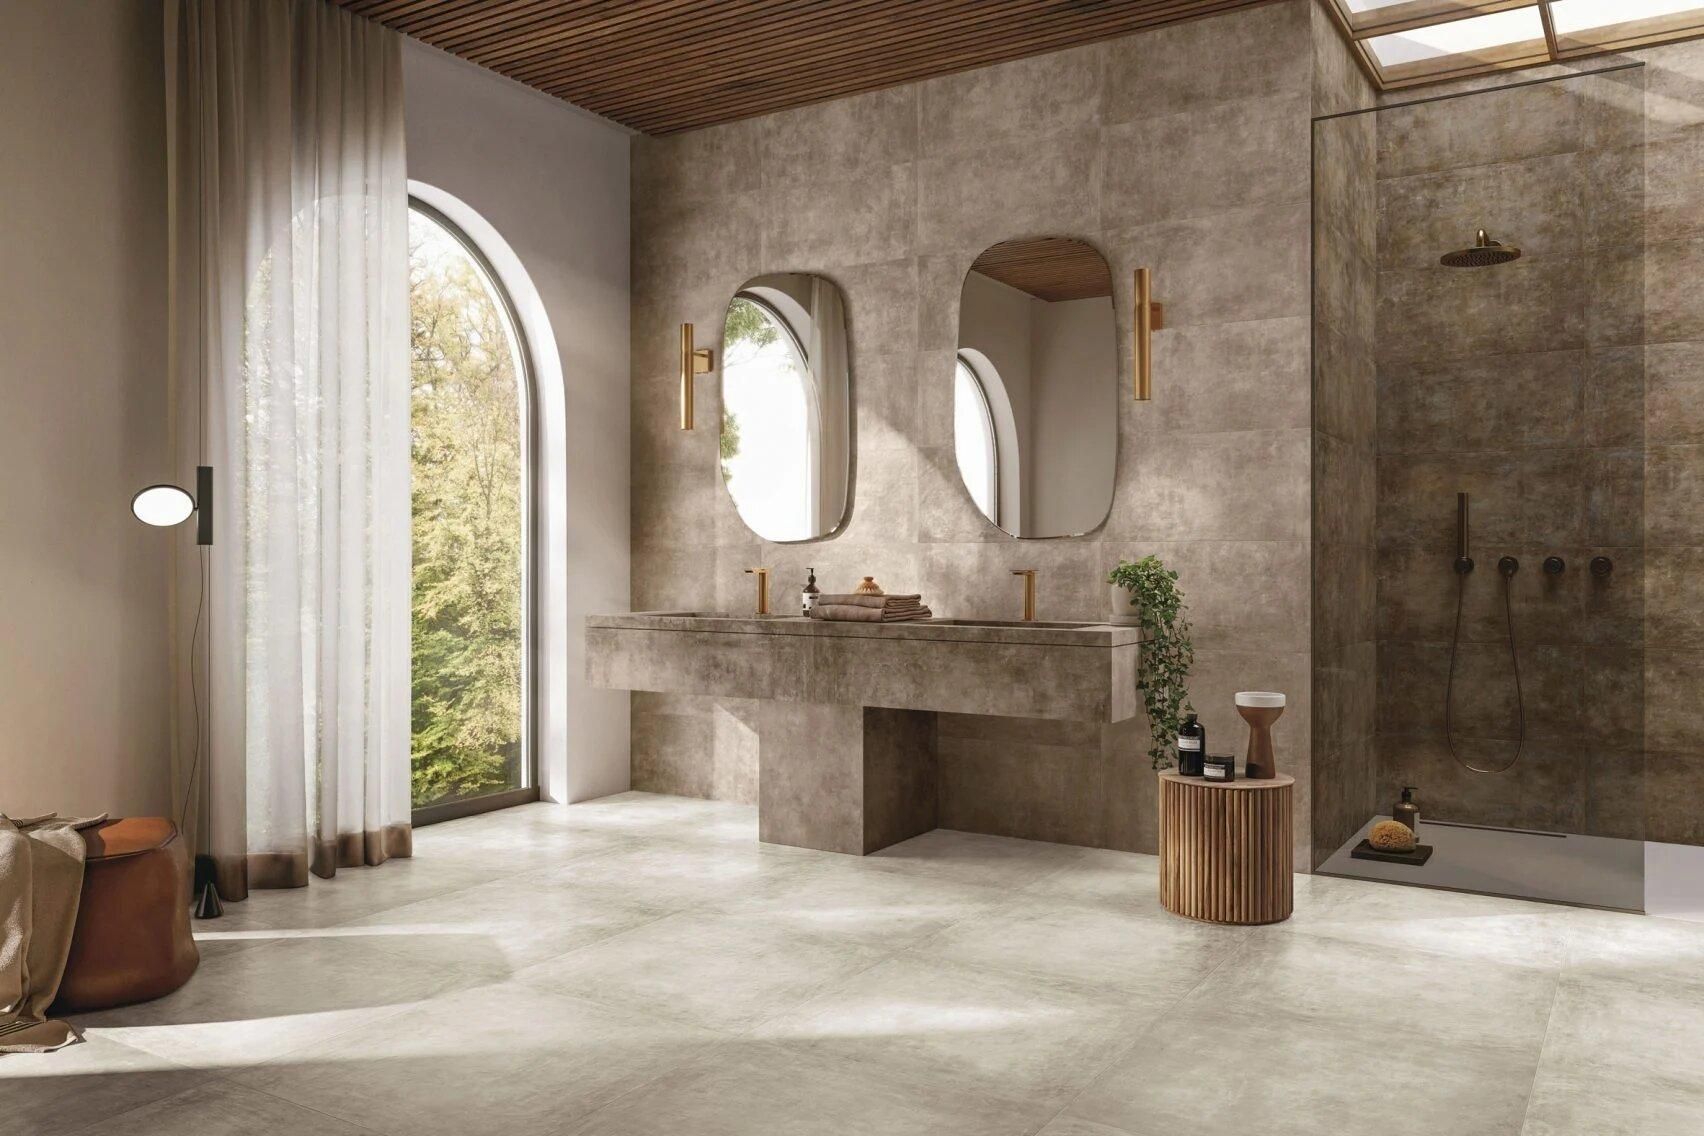 Дом как фреска: вариант интерьера от итальянских дизайнеров - Дизайн 24